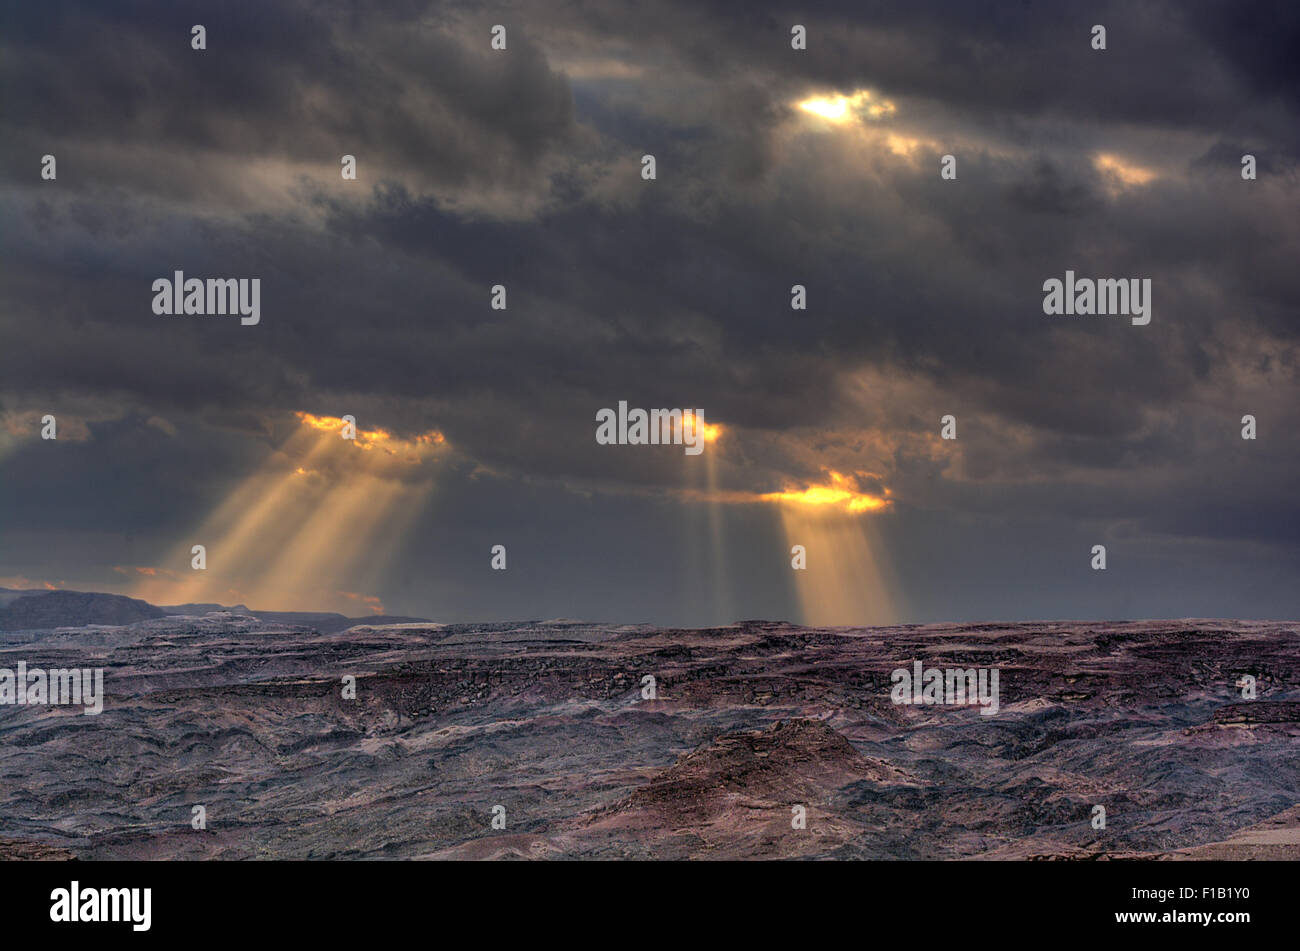 Inspiring skies and desert scenery Stock Photo